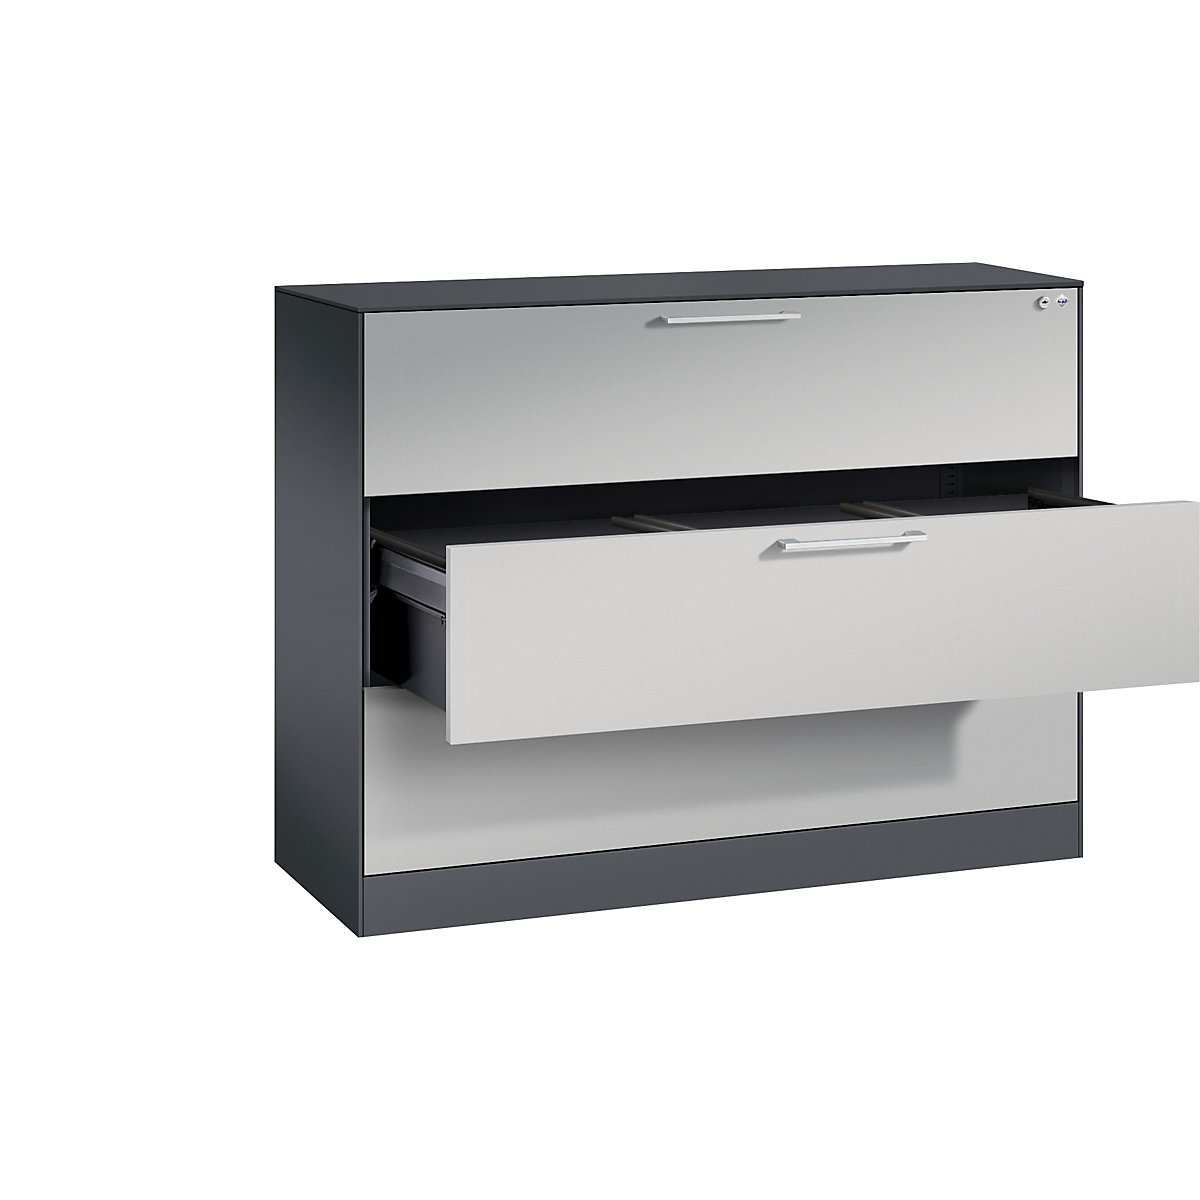 ASISTO függő irattartós szekrény – C+P, szélesség 1200 mm, 3 fiókkal, feketésszürke/fehéralumínium-18